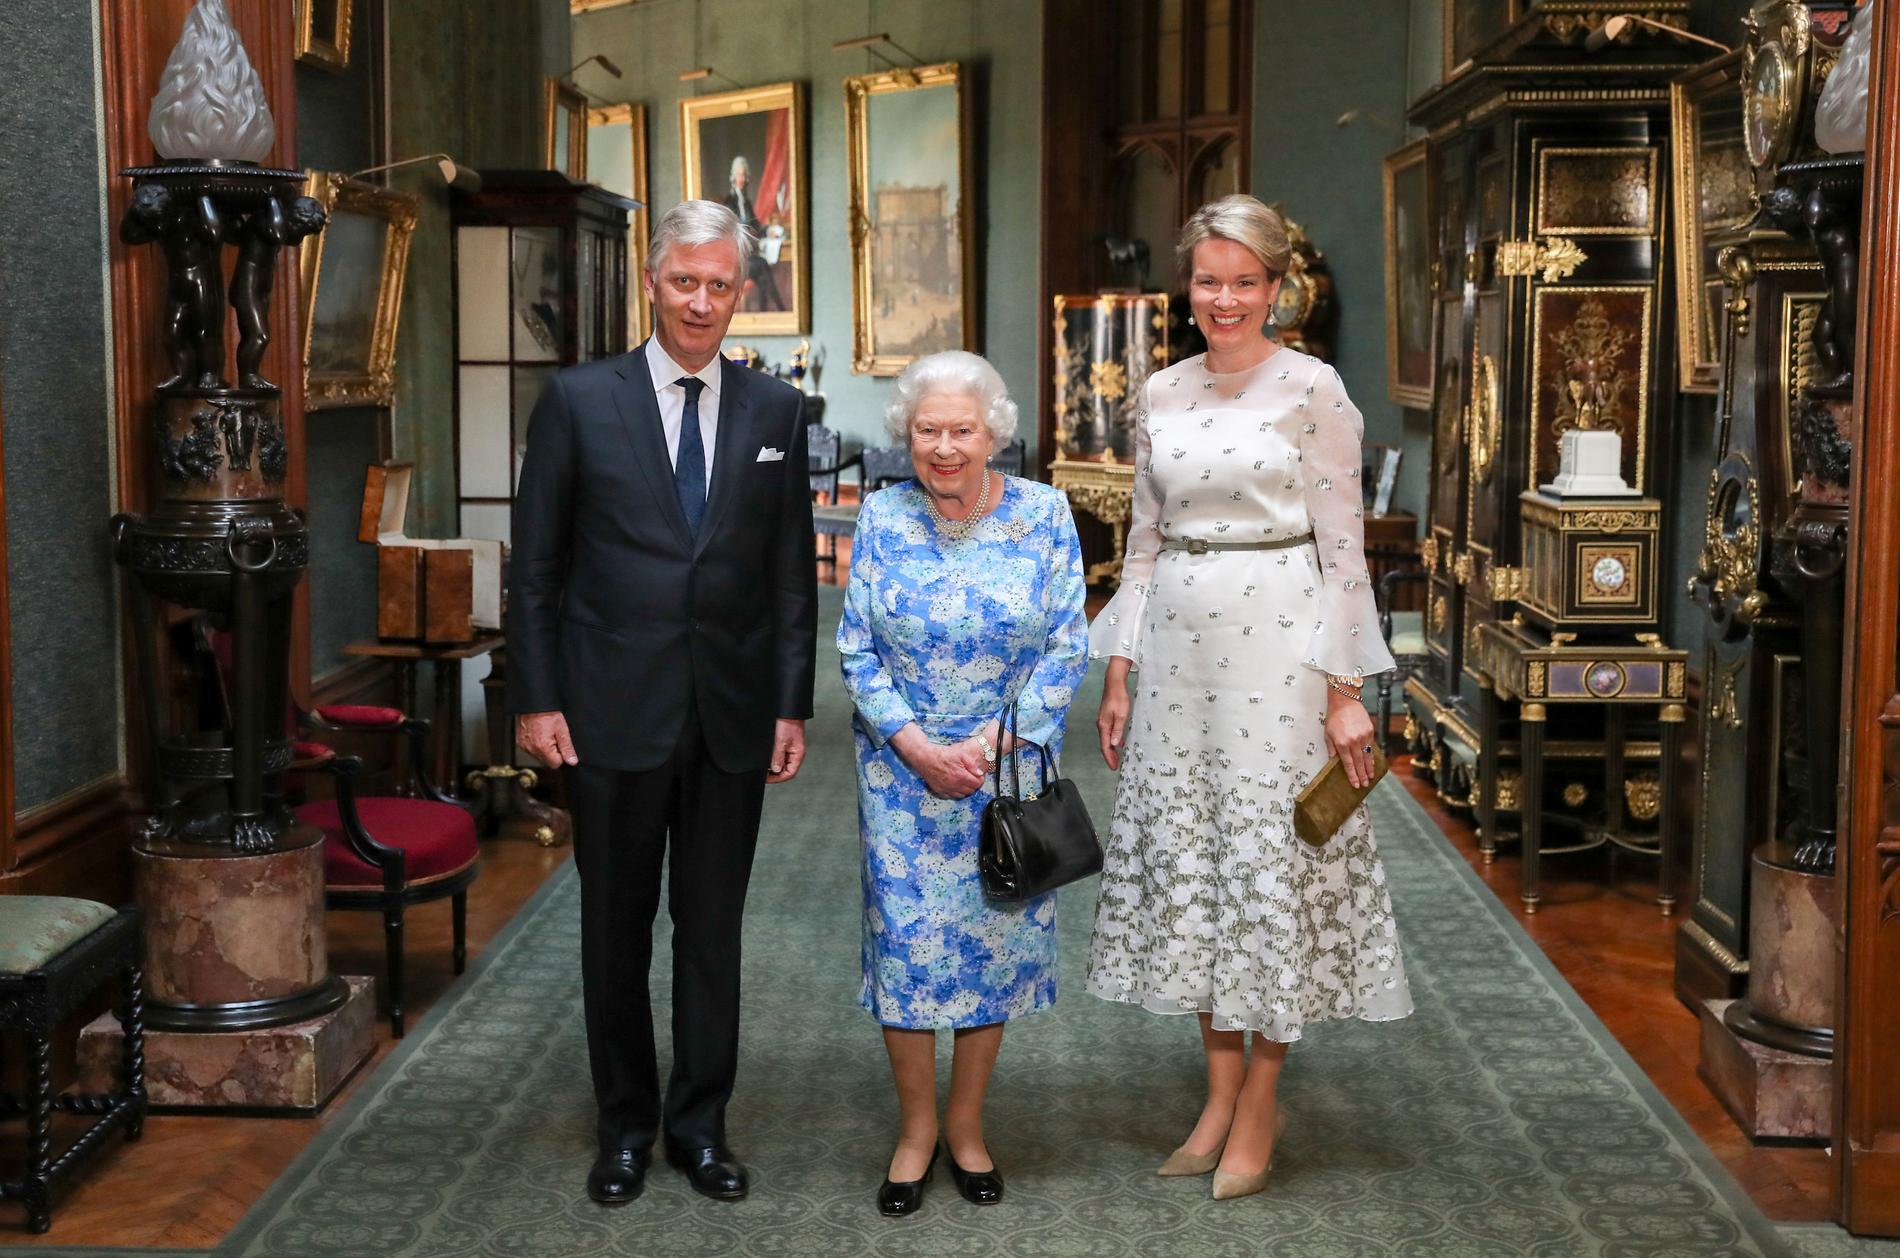 Dag tre: Trump är kvar i landet och drottning Elizabeth har besök i form av kung Philippe och drottning Mathilde av Belgien. Dagen till ära bär hon en brosch som kallas ”Sapphire Jubillee Brooch”. Denna brosch var en gåva till henne från bundsförvanten Kanada. Alltså Trumps grannland vilket han tidigare i somras kritiserade efter G7-mötet (som också hölls i Kandada).  